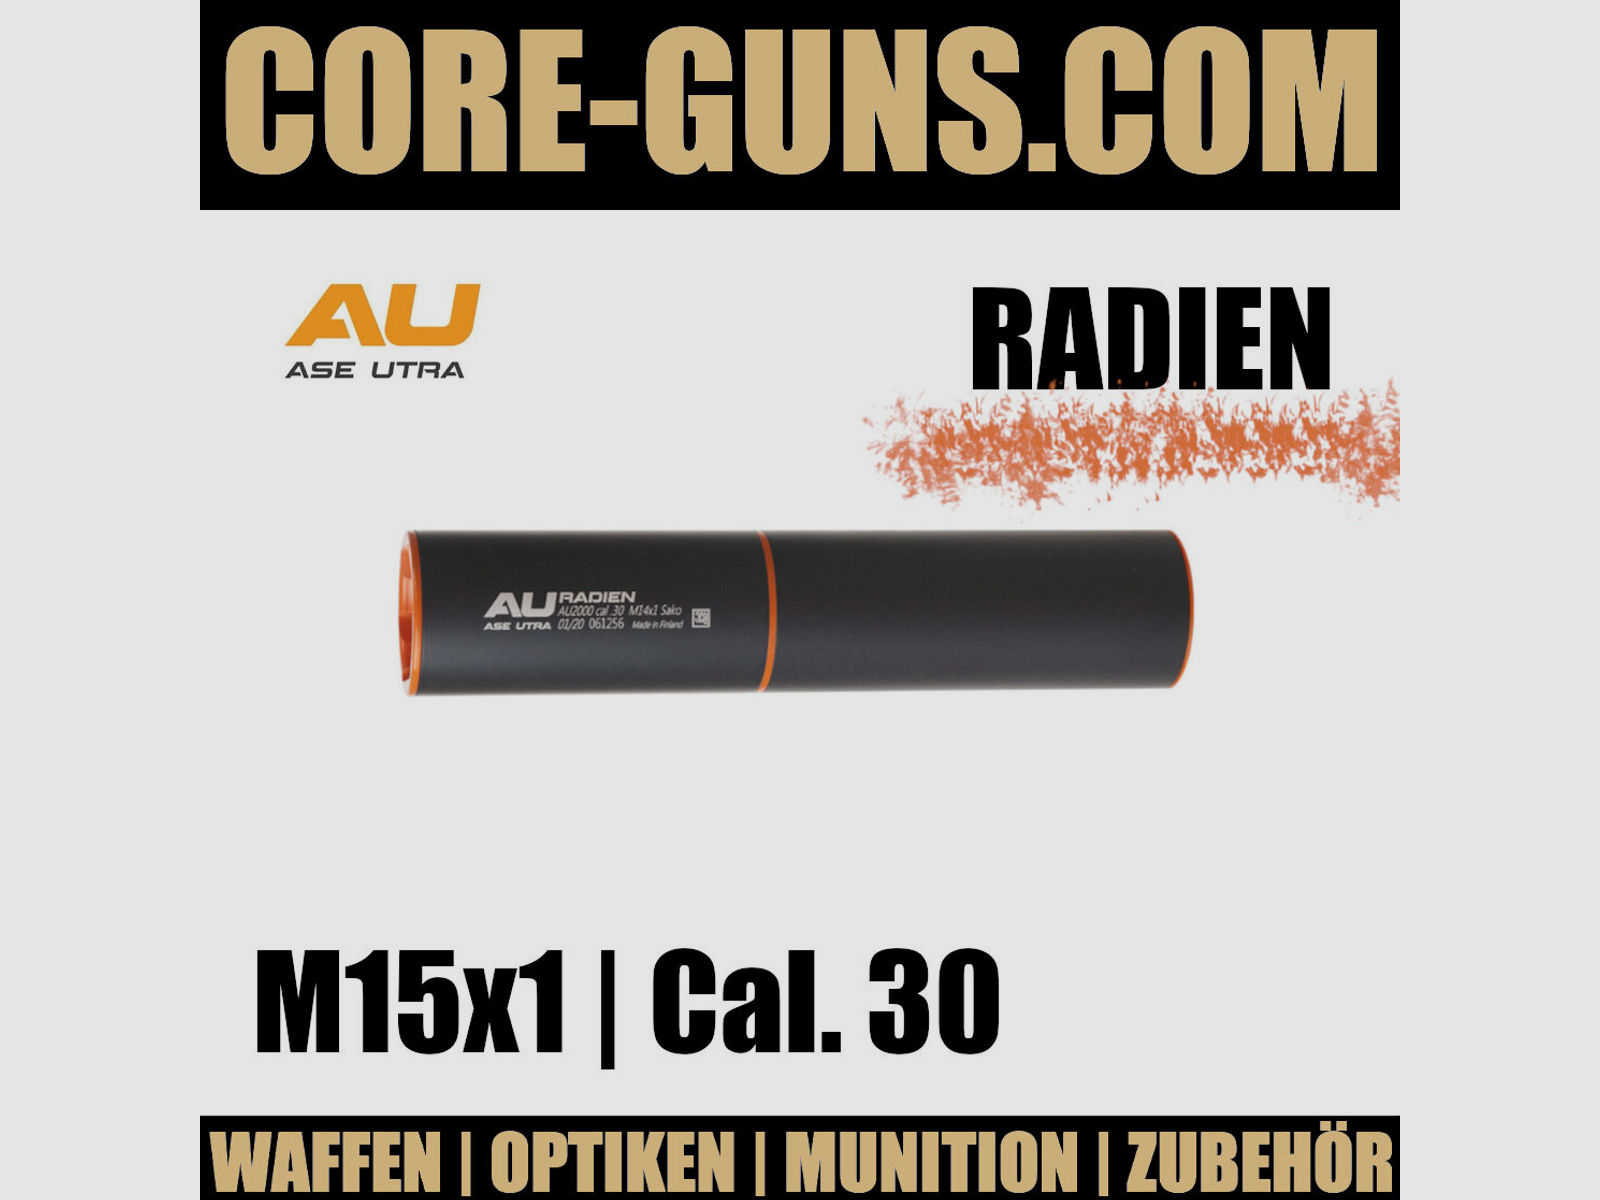 Ase Utra Radien orange Cal. 30 Gewinde M15x1 Schalldämpfer